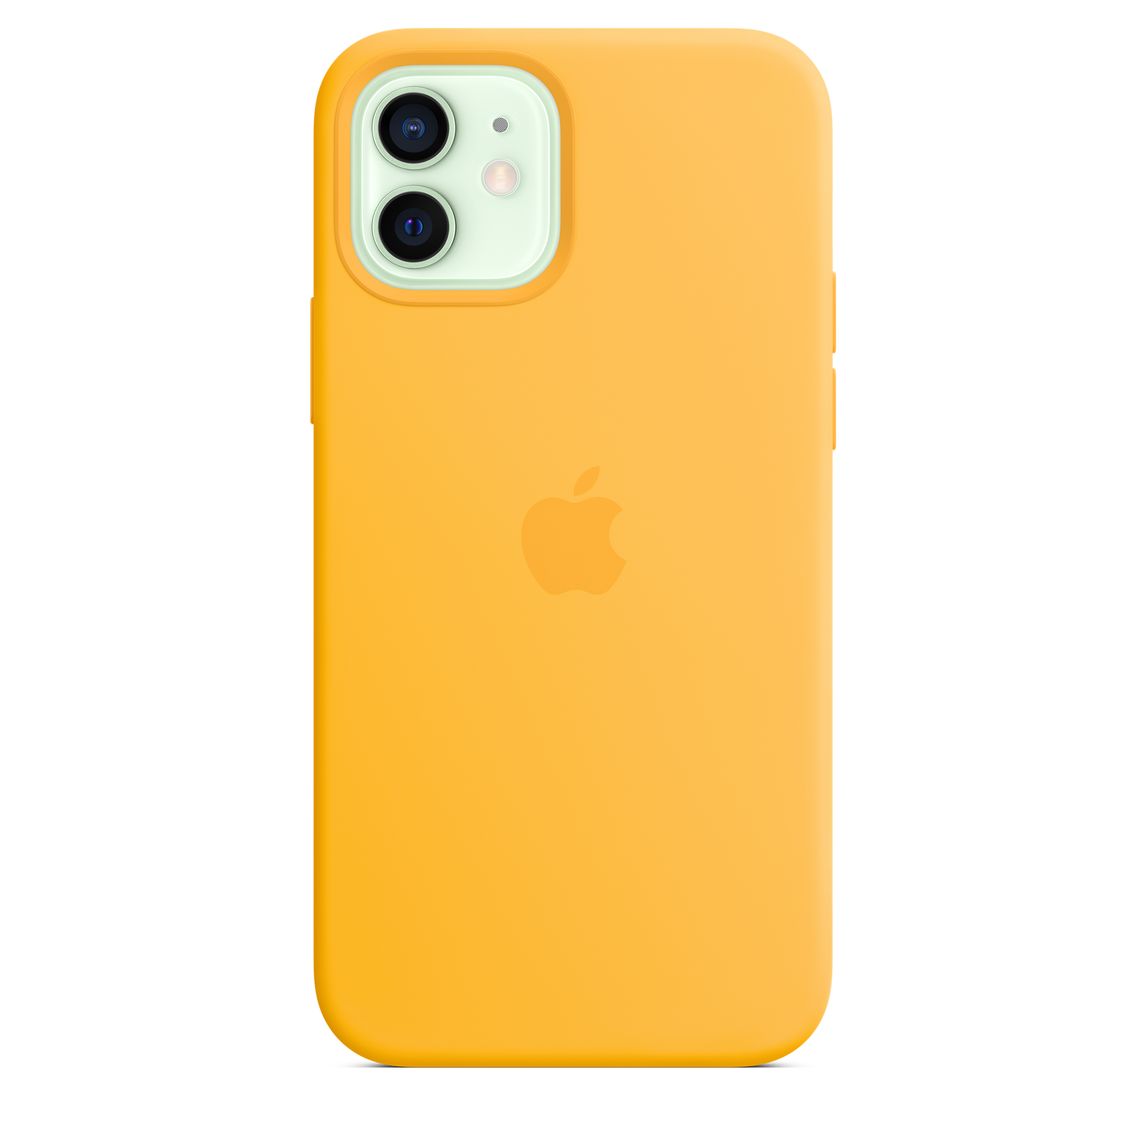 Фото — Чехол Apple MagSafe для iPhone 12/12 Pro, cиликон, ярко-желтый